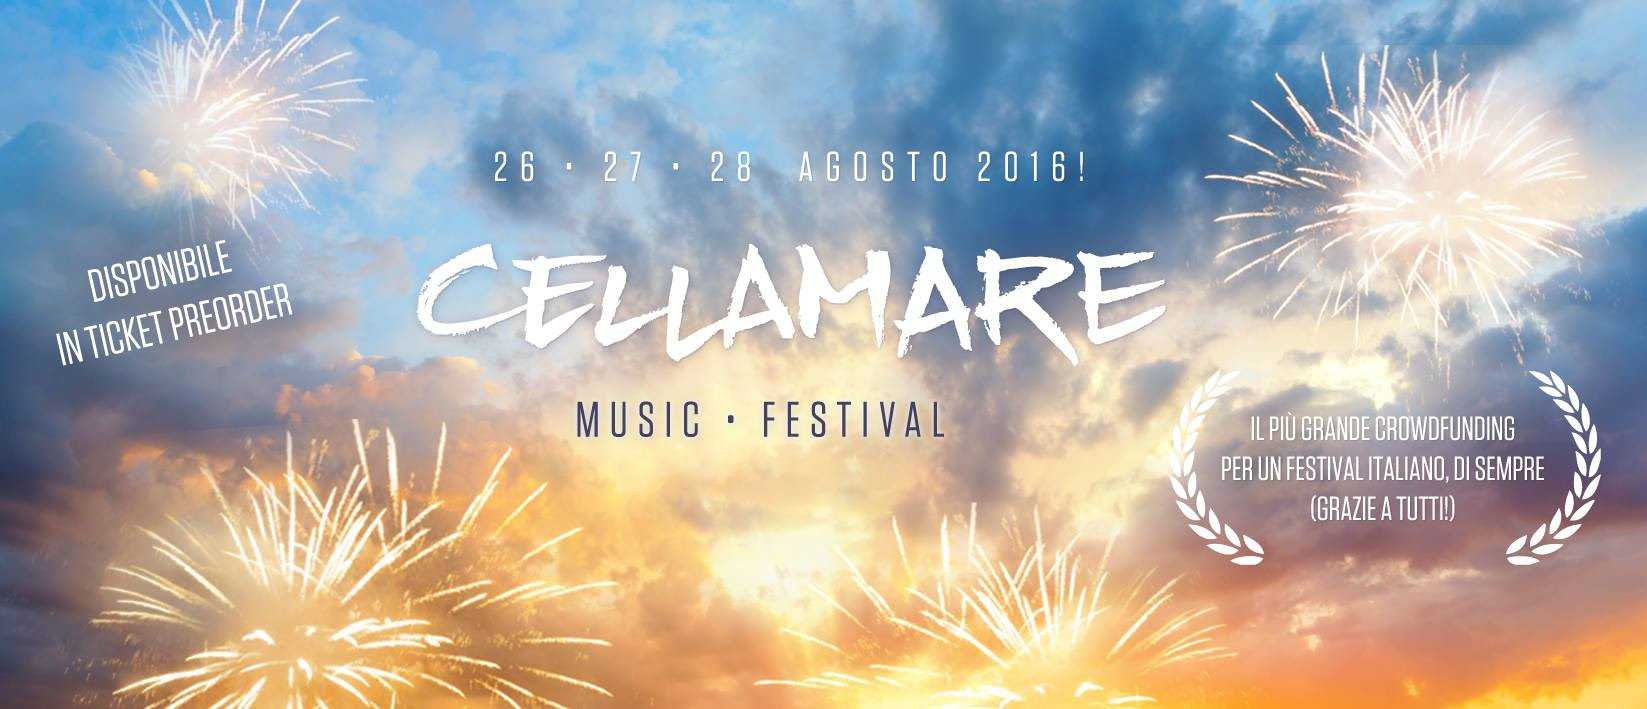 Cellamare Music Festival, è iniziato il conto alla rovescia